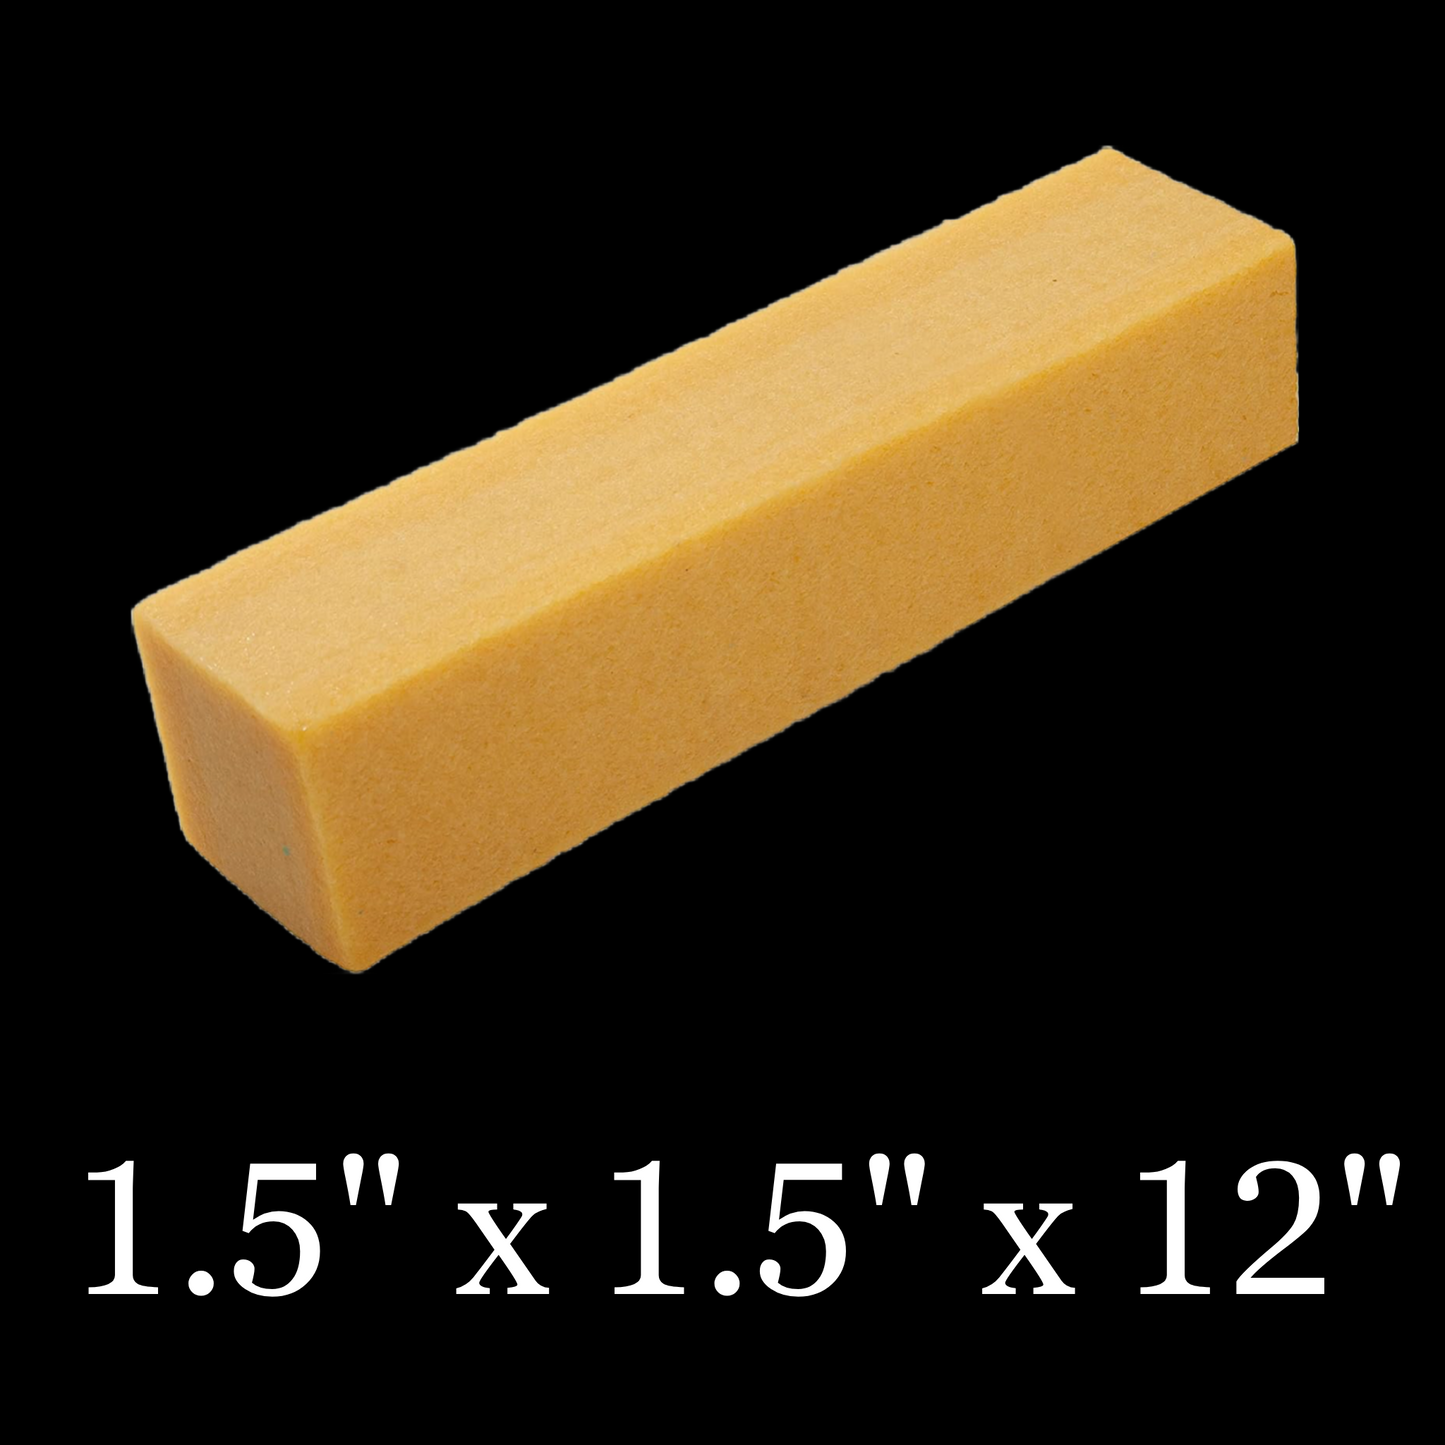 Rubber Belt Eraser Cleaner 1.5” x 1.5” x 12”